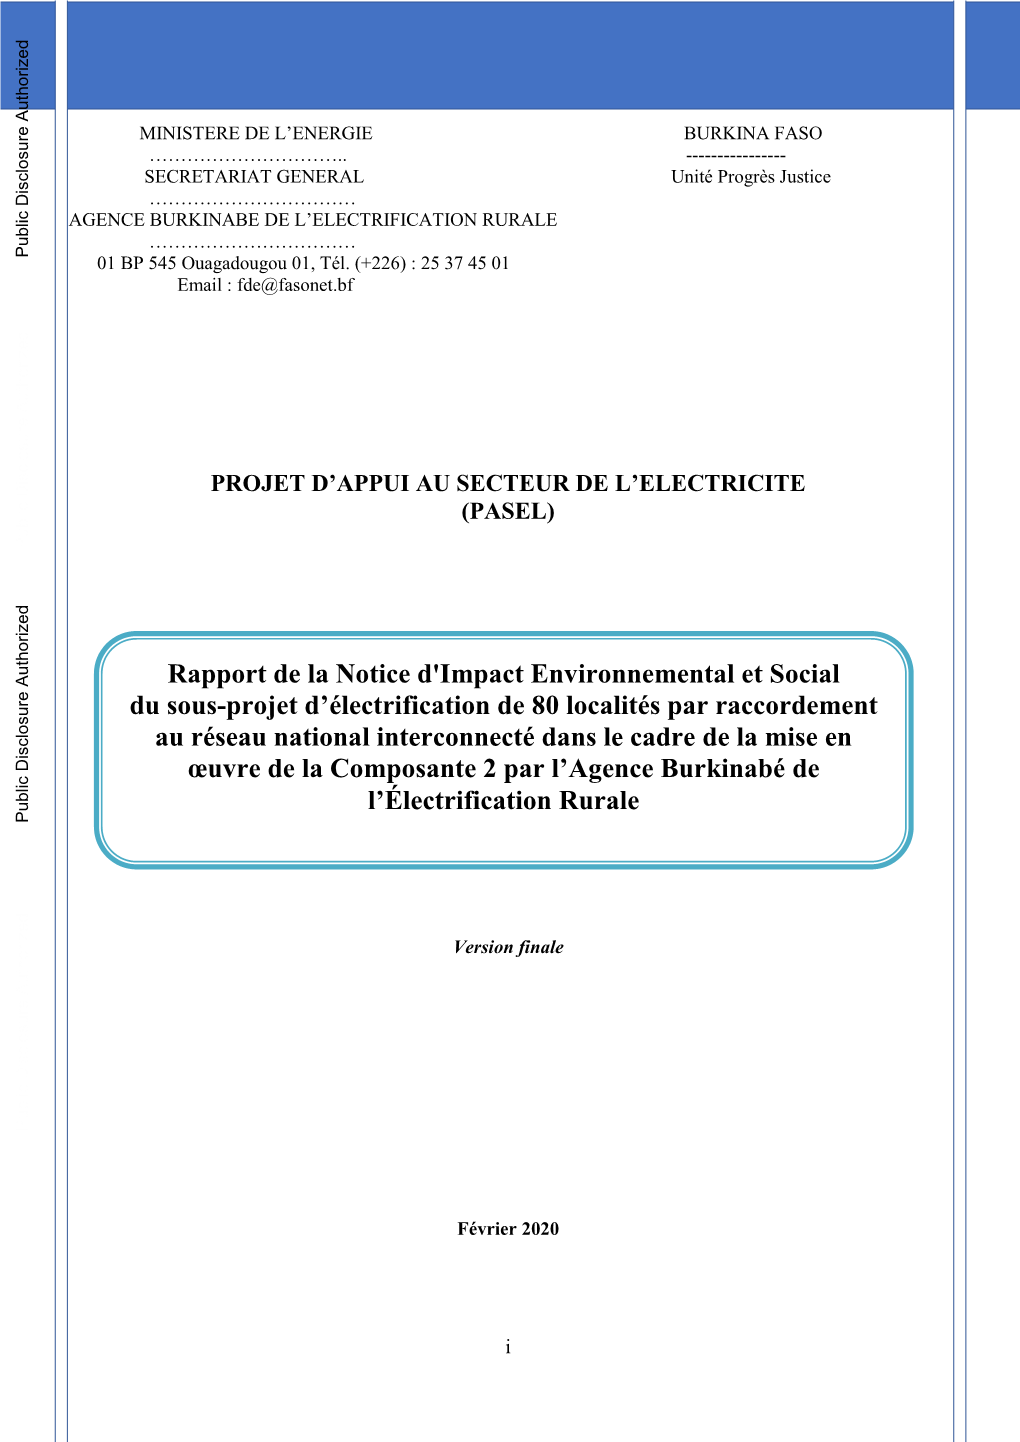 Rapport-De-La-Notice-Dimpact-Environnemental-Et-Social.Pdf